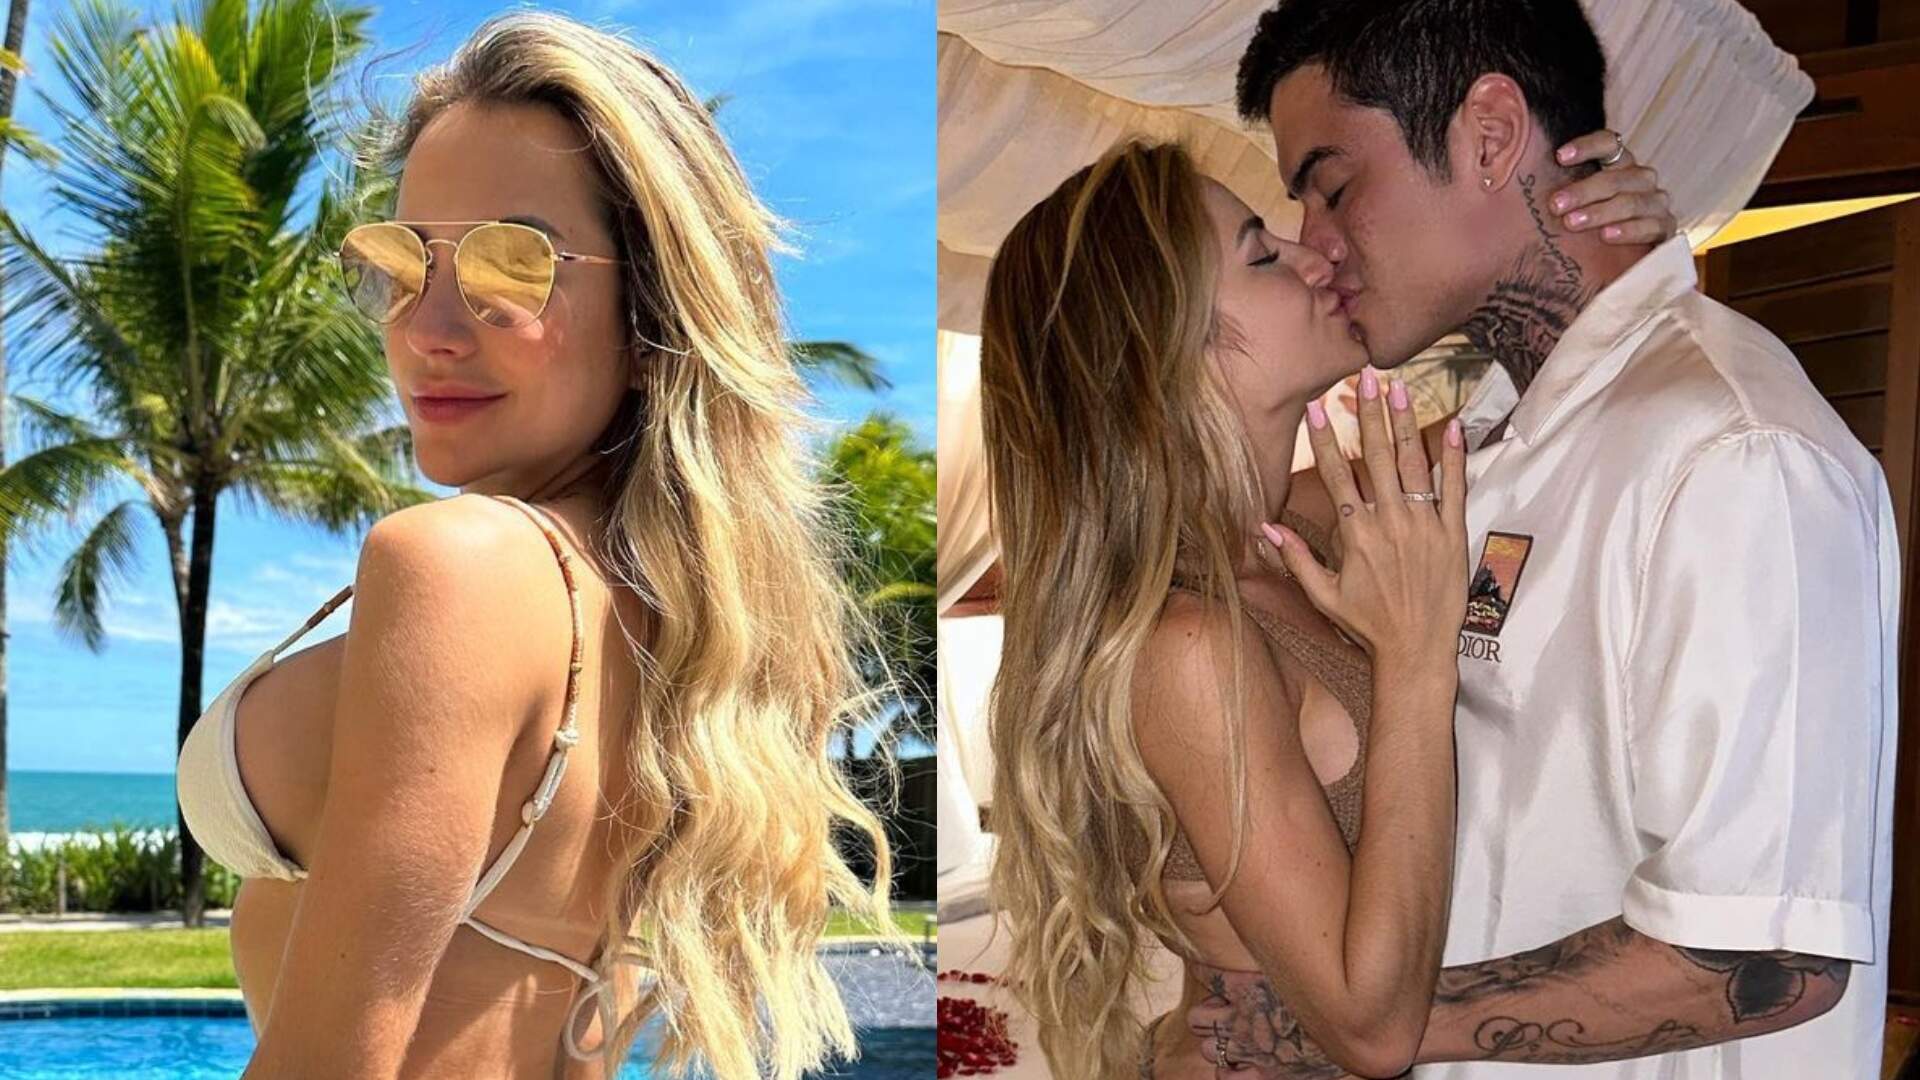 Novo namorado de Gabi Martins flagra cantora na piscina com seu bumbum molhado: “Paraíso” - Metropolitana FM